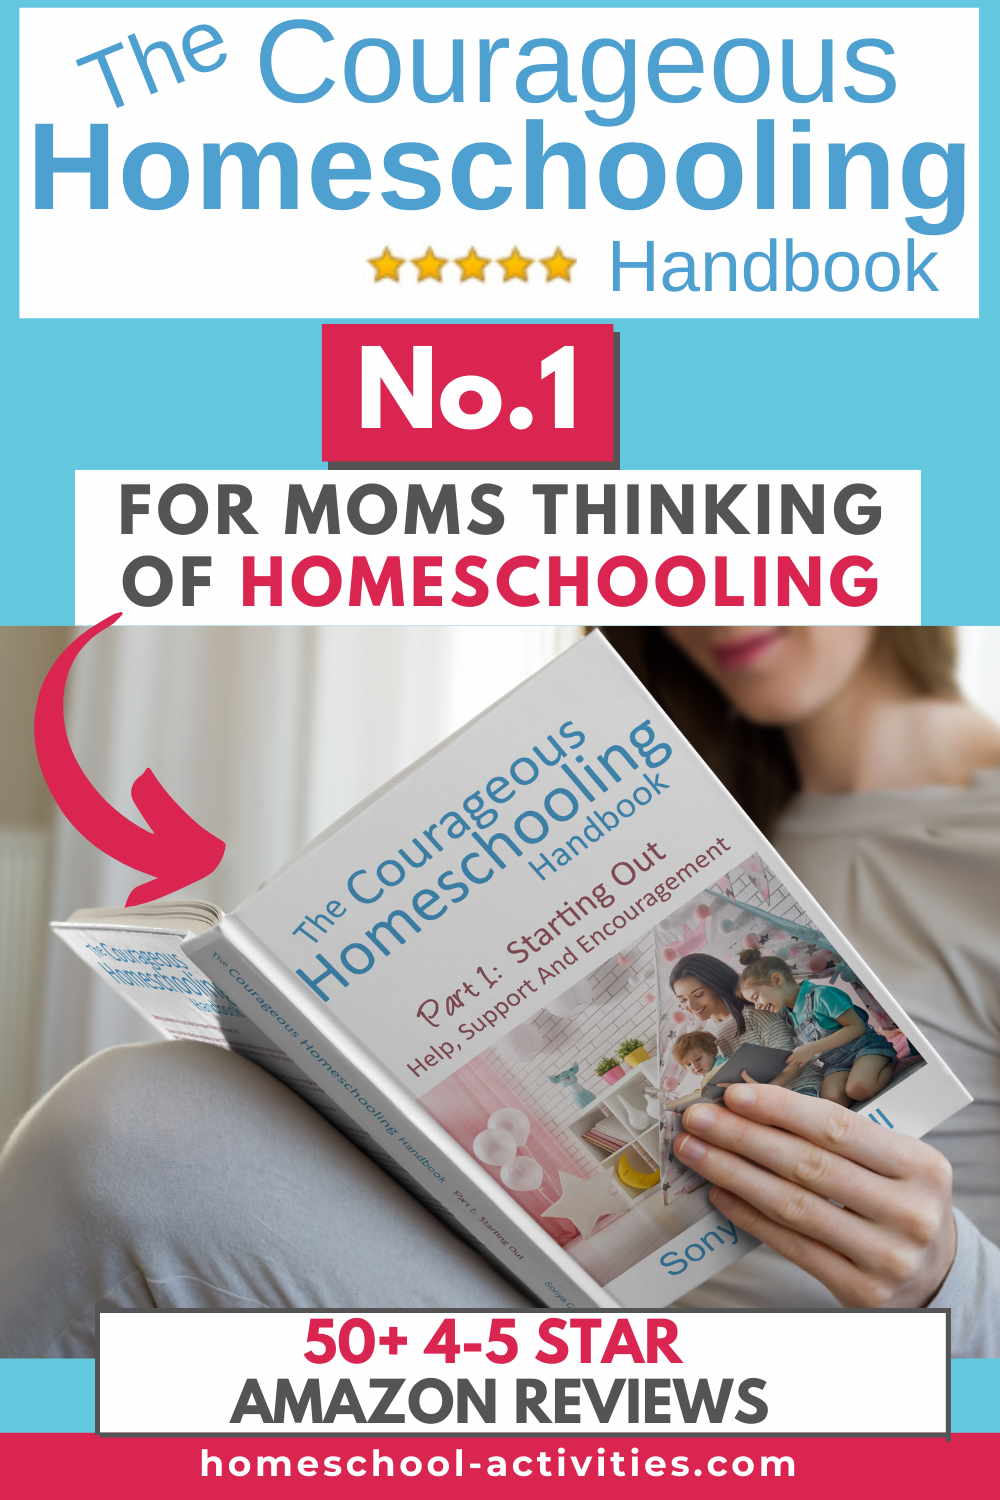 The Courageous Homeschooling Handbook 1 PIN 50 reviews 130kb